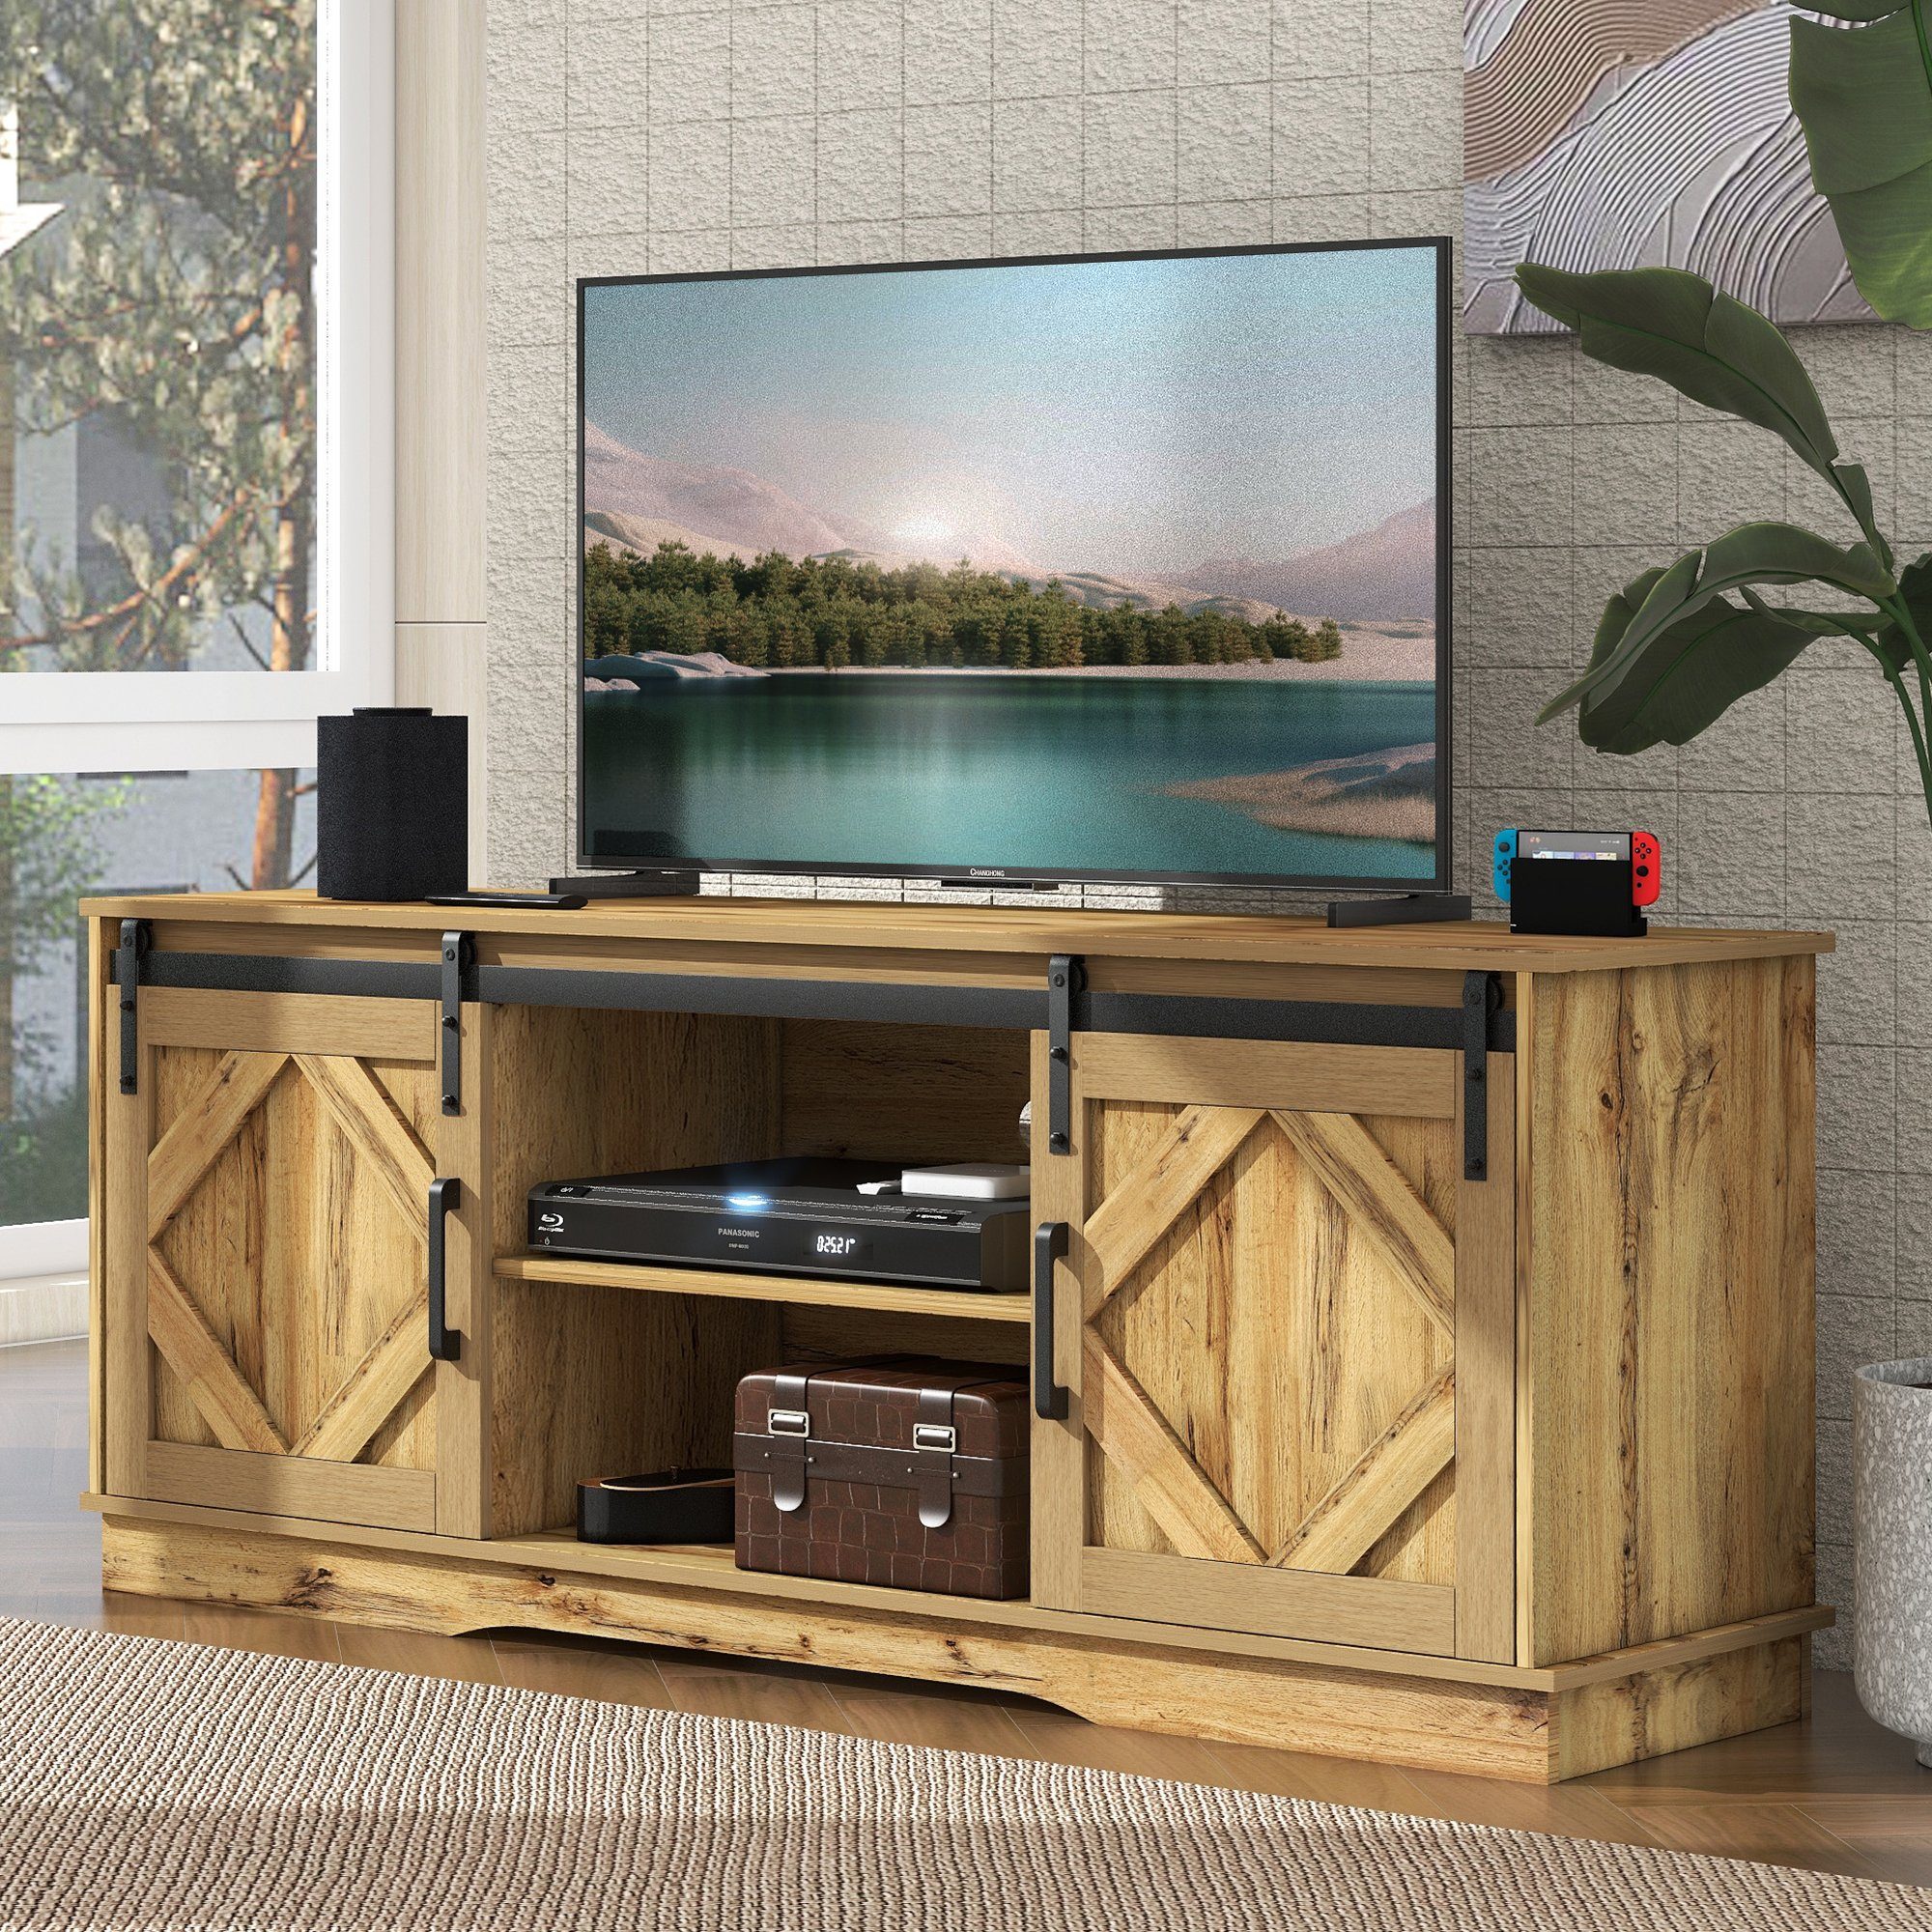 WISHDOR TV-Schrank Fernsehschrank Anrichte Beistellschrank (150*40*60cm Braun) mit 2 klassischen Schiebetüren, Einstellbare Regale | TV-Schränke